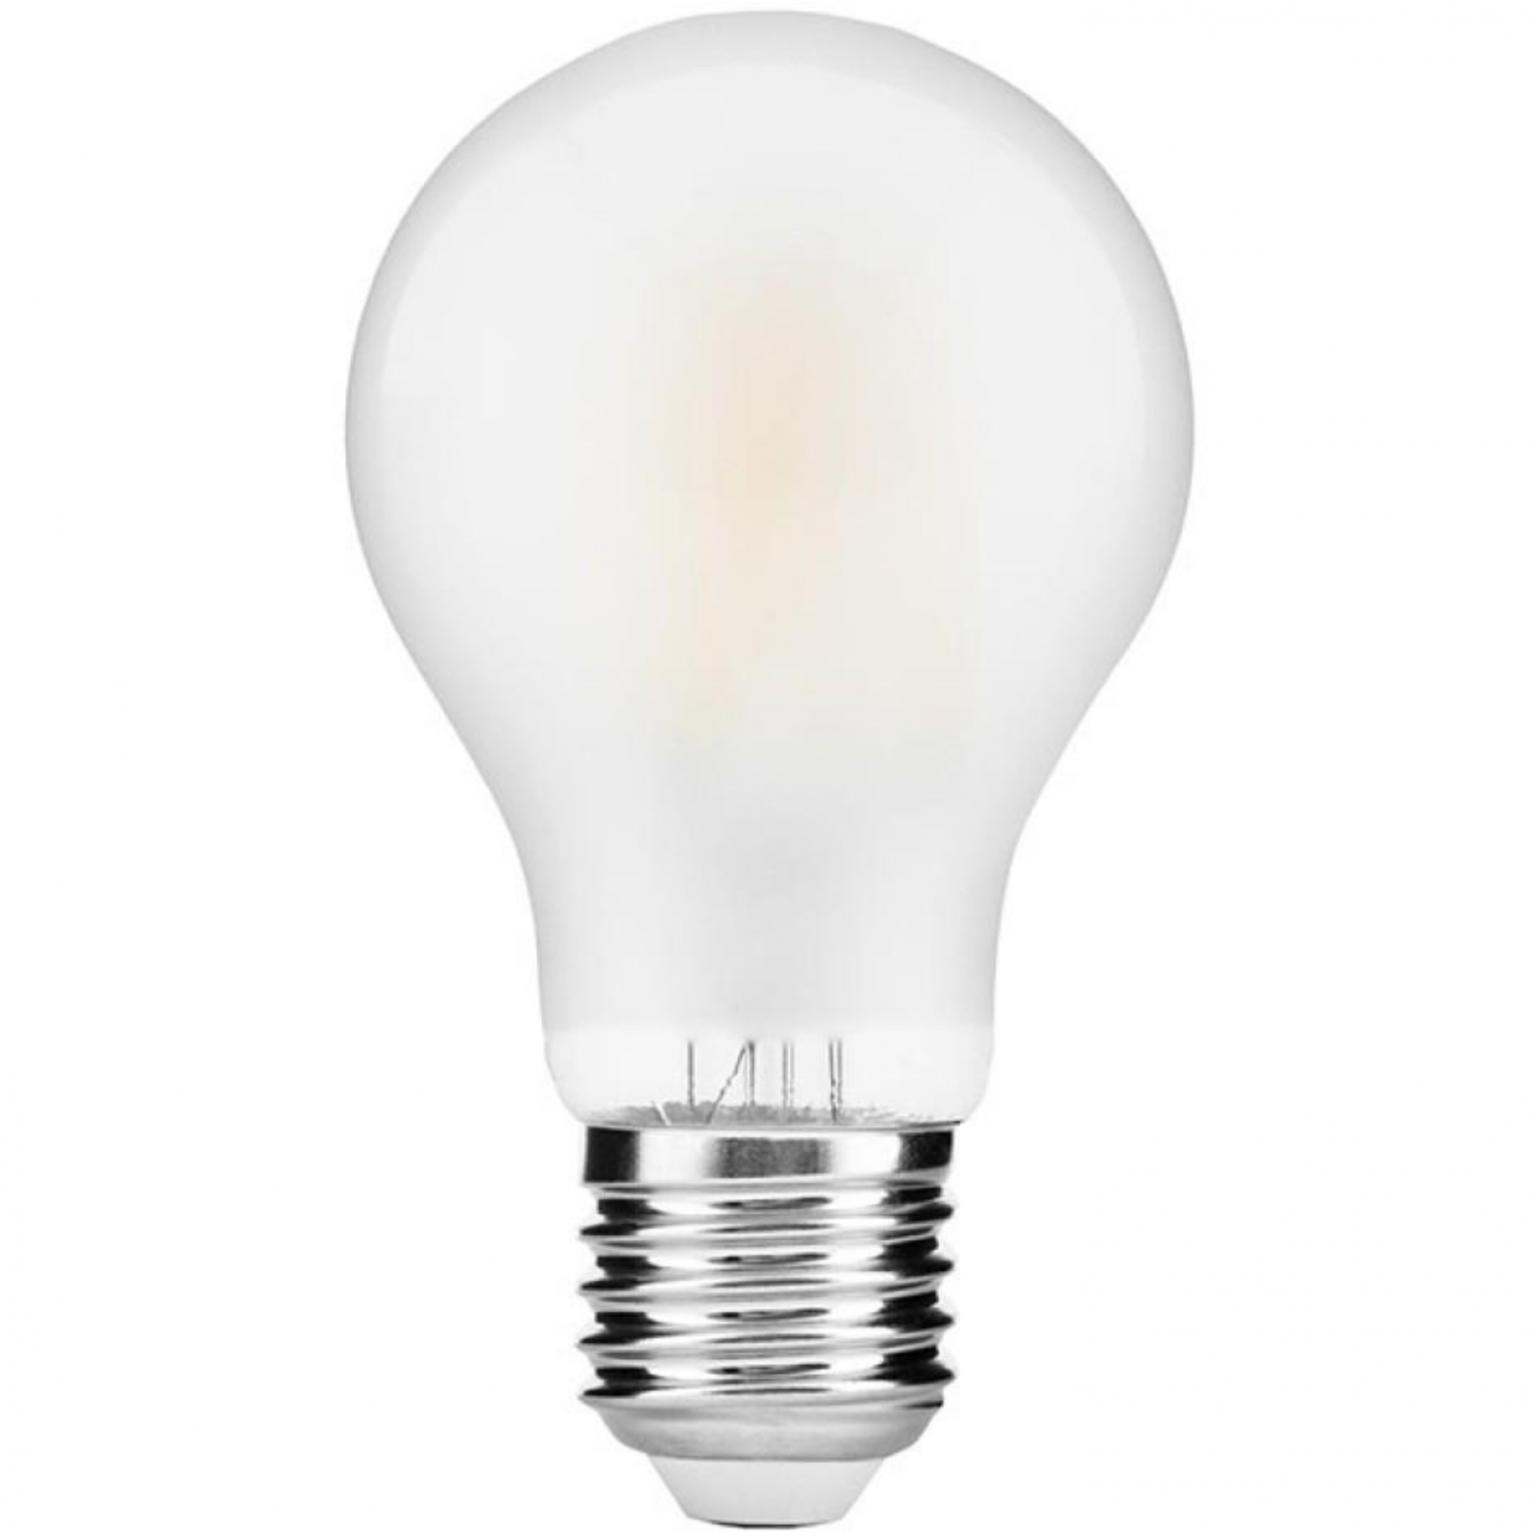 Filament lamp - 990 lumen - Avide